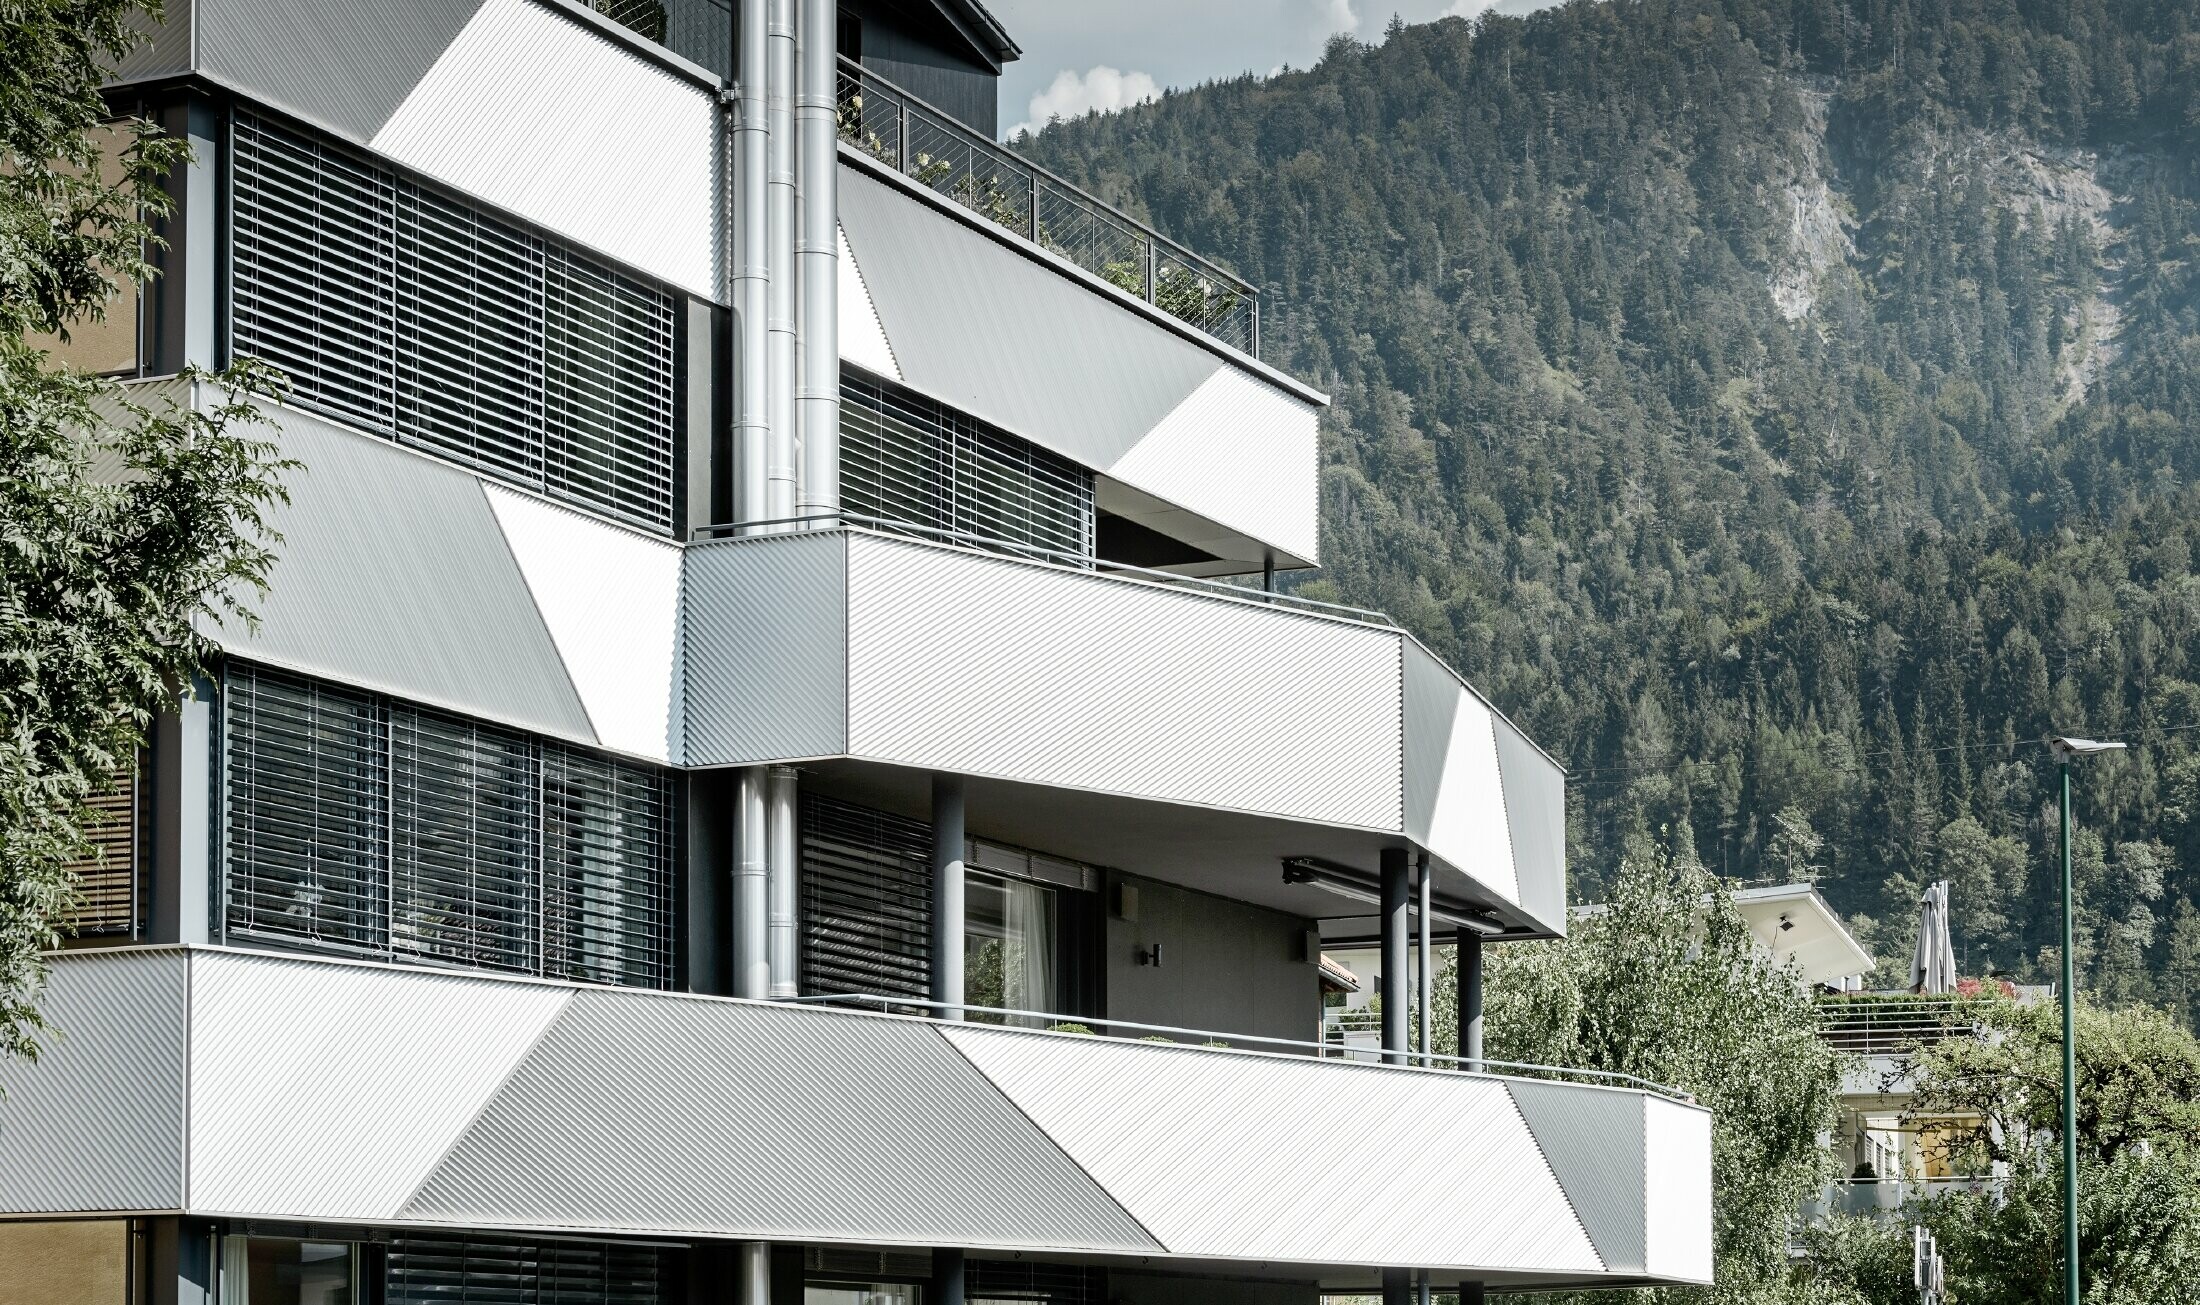 Aranżacja elewacji domu wielorodzinnego z balkonami i lodżiami z profilem trójkątnym PREFA położonym ukośnie.